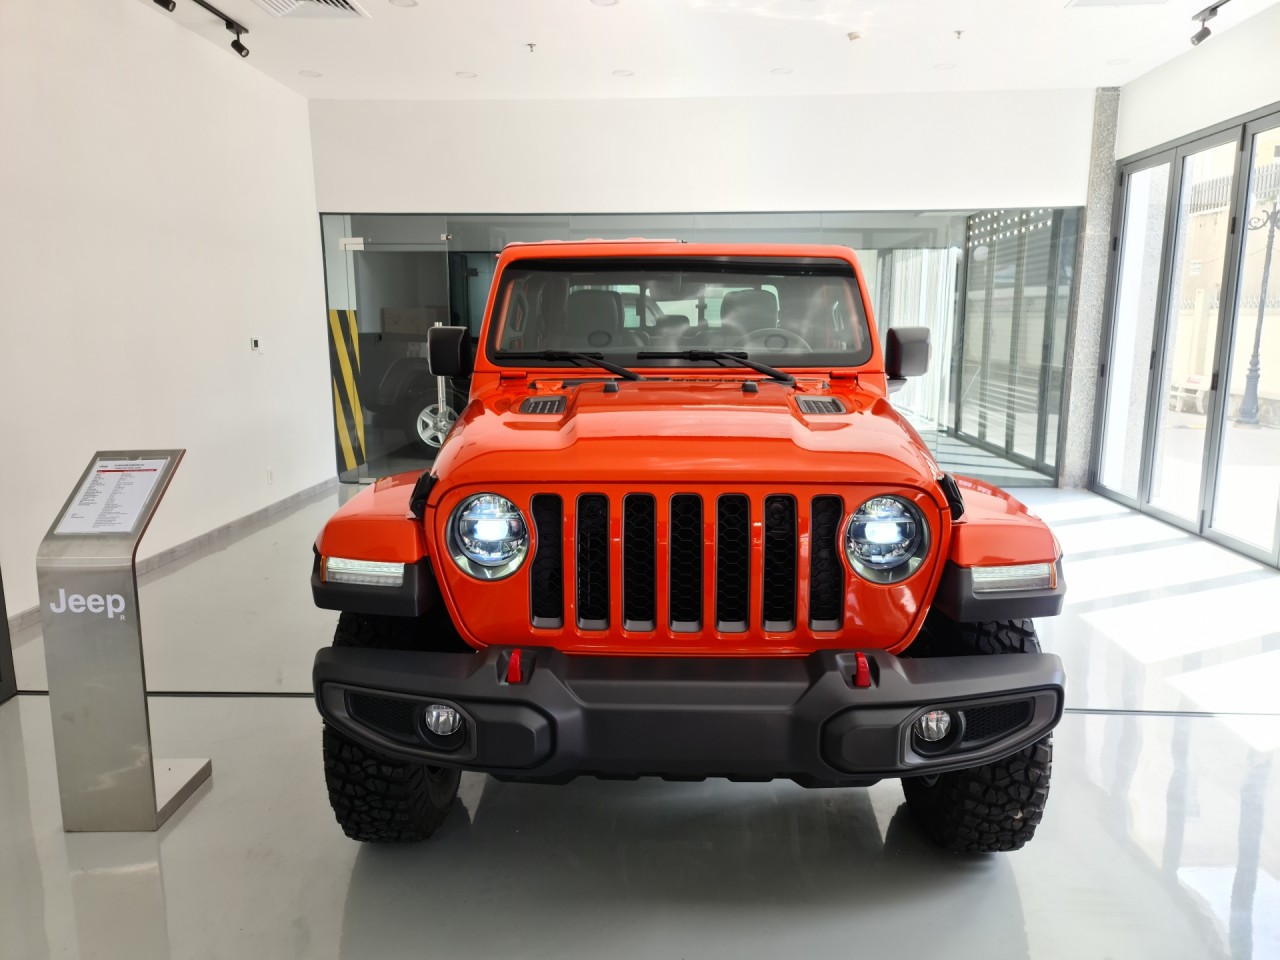 Cận cảnh bán tải Jeep Gladiator 2020 giá gần 3,5 tỷ đồng